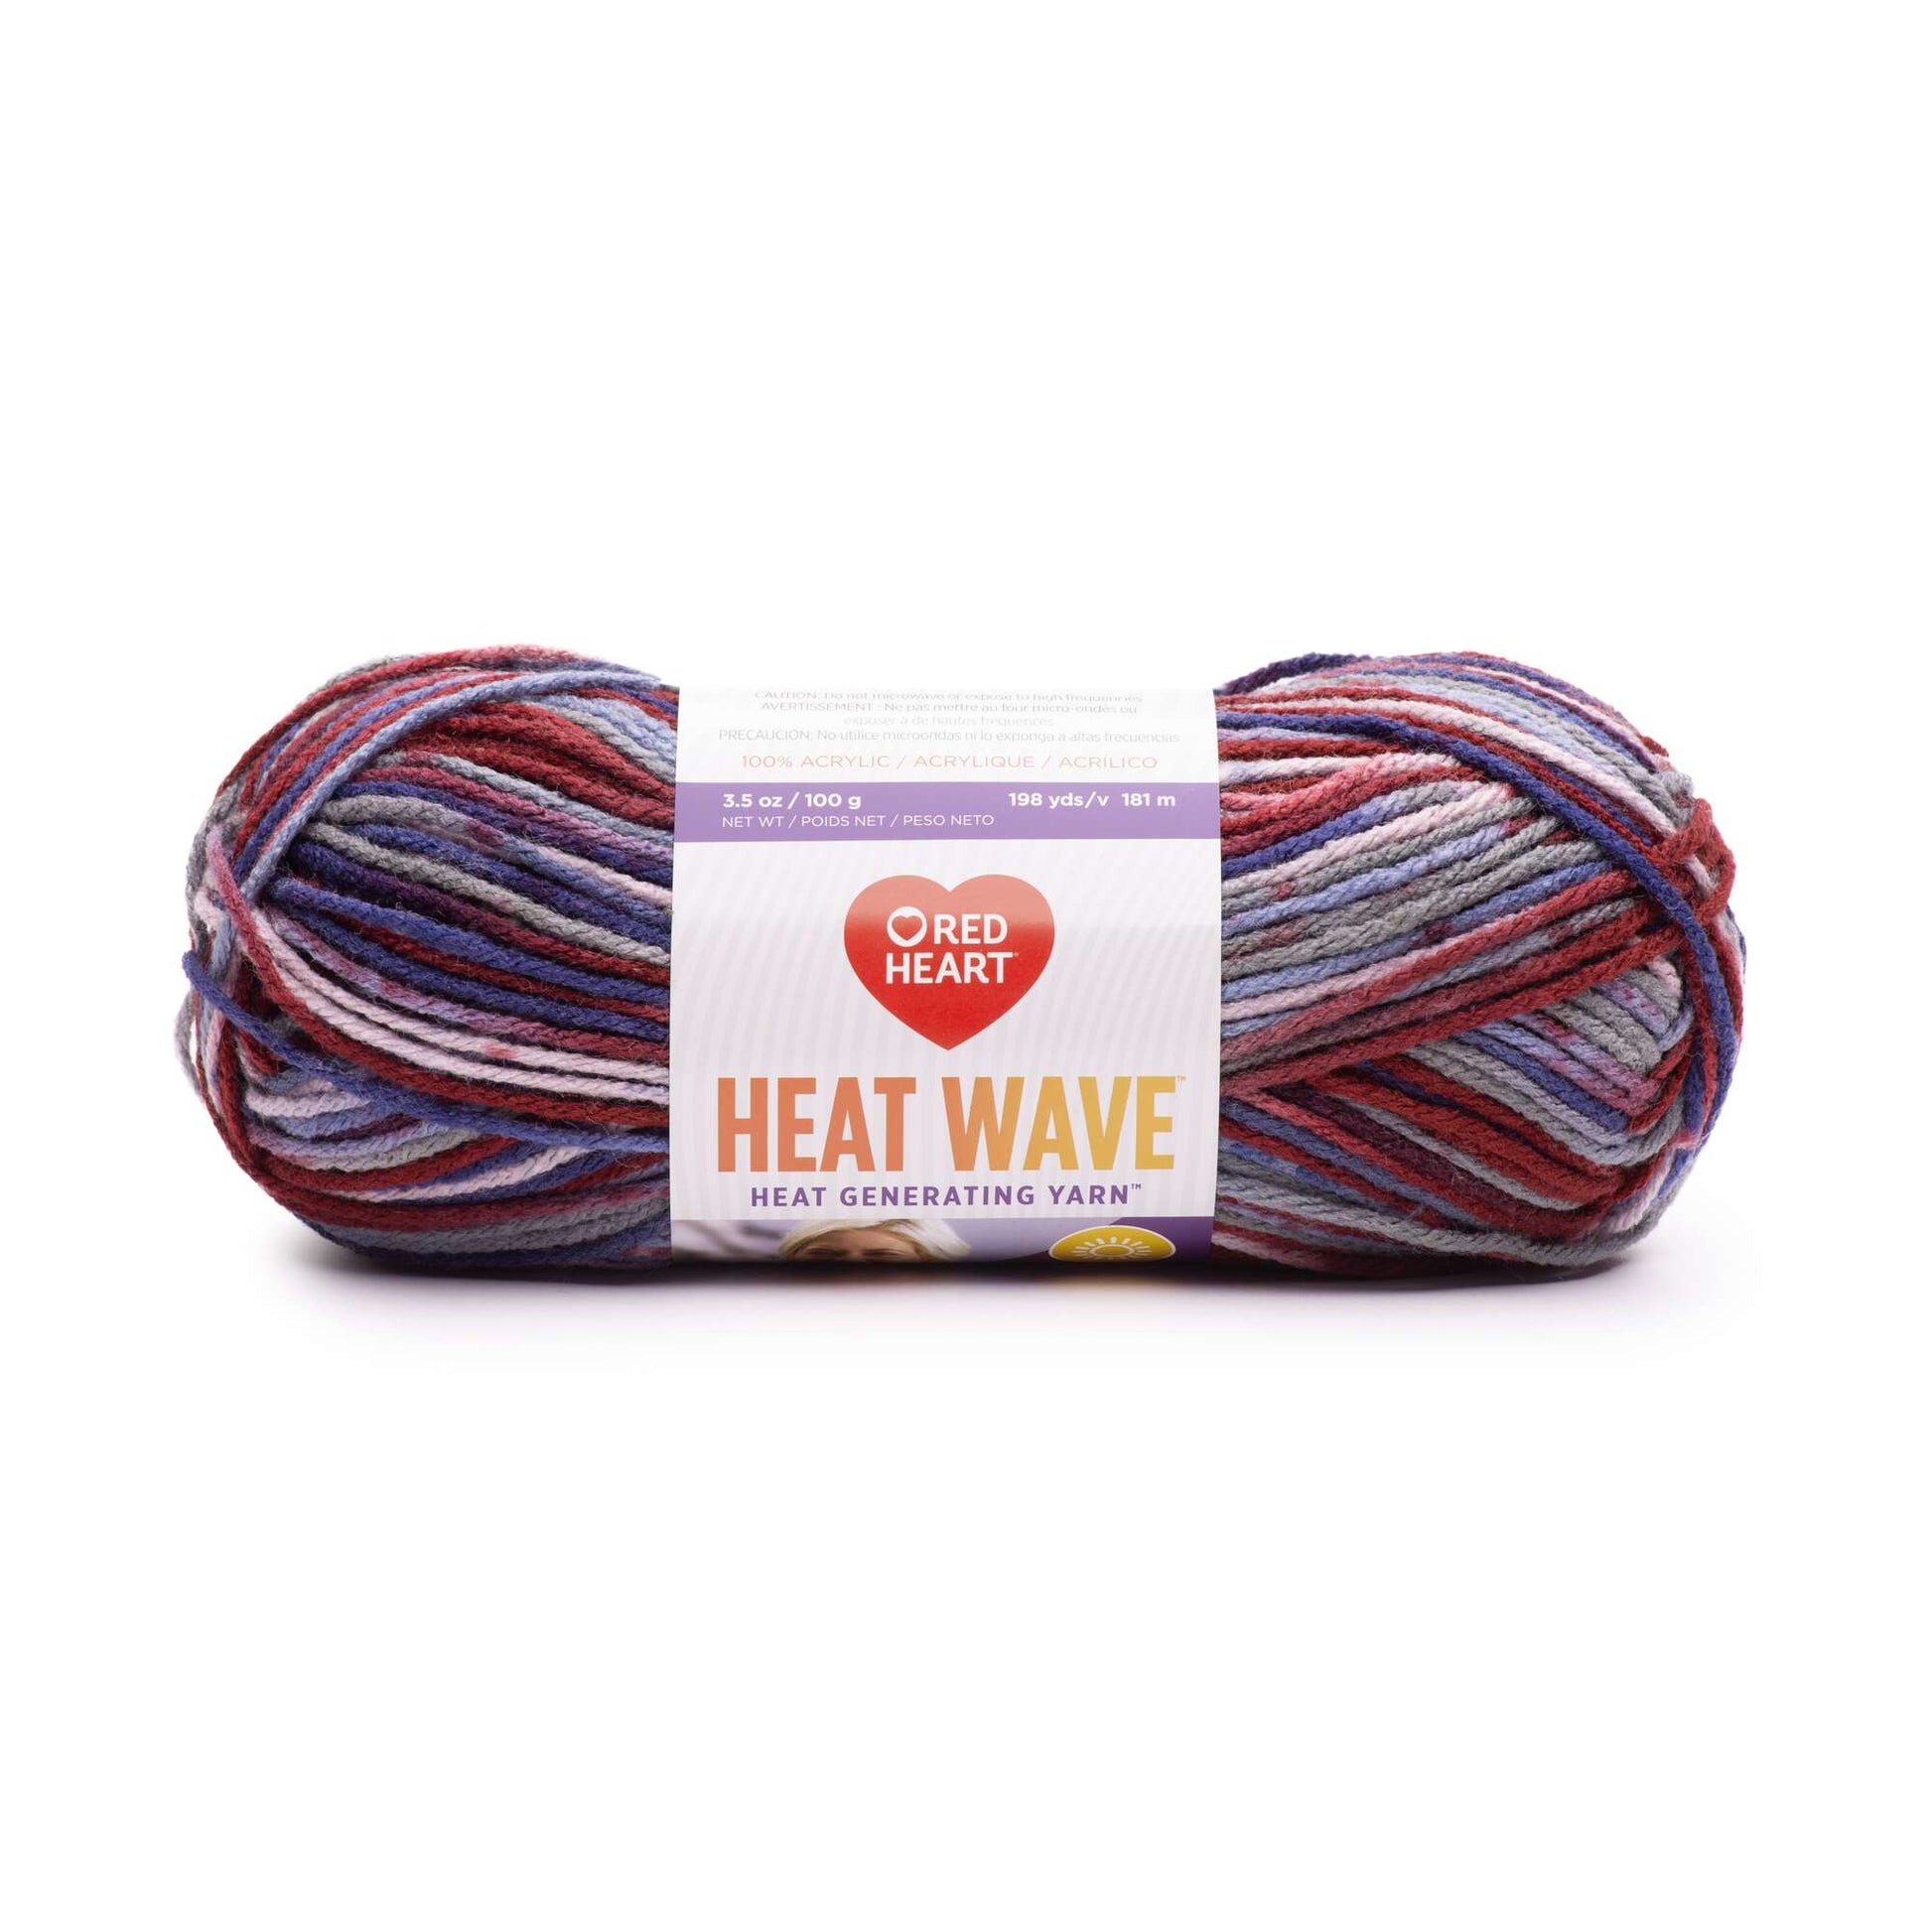 Red Heart Heat Wave Yarn - Clearance shades Tourist